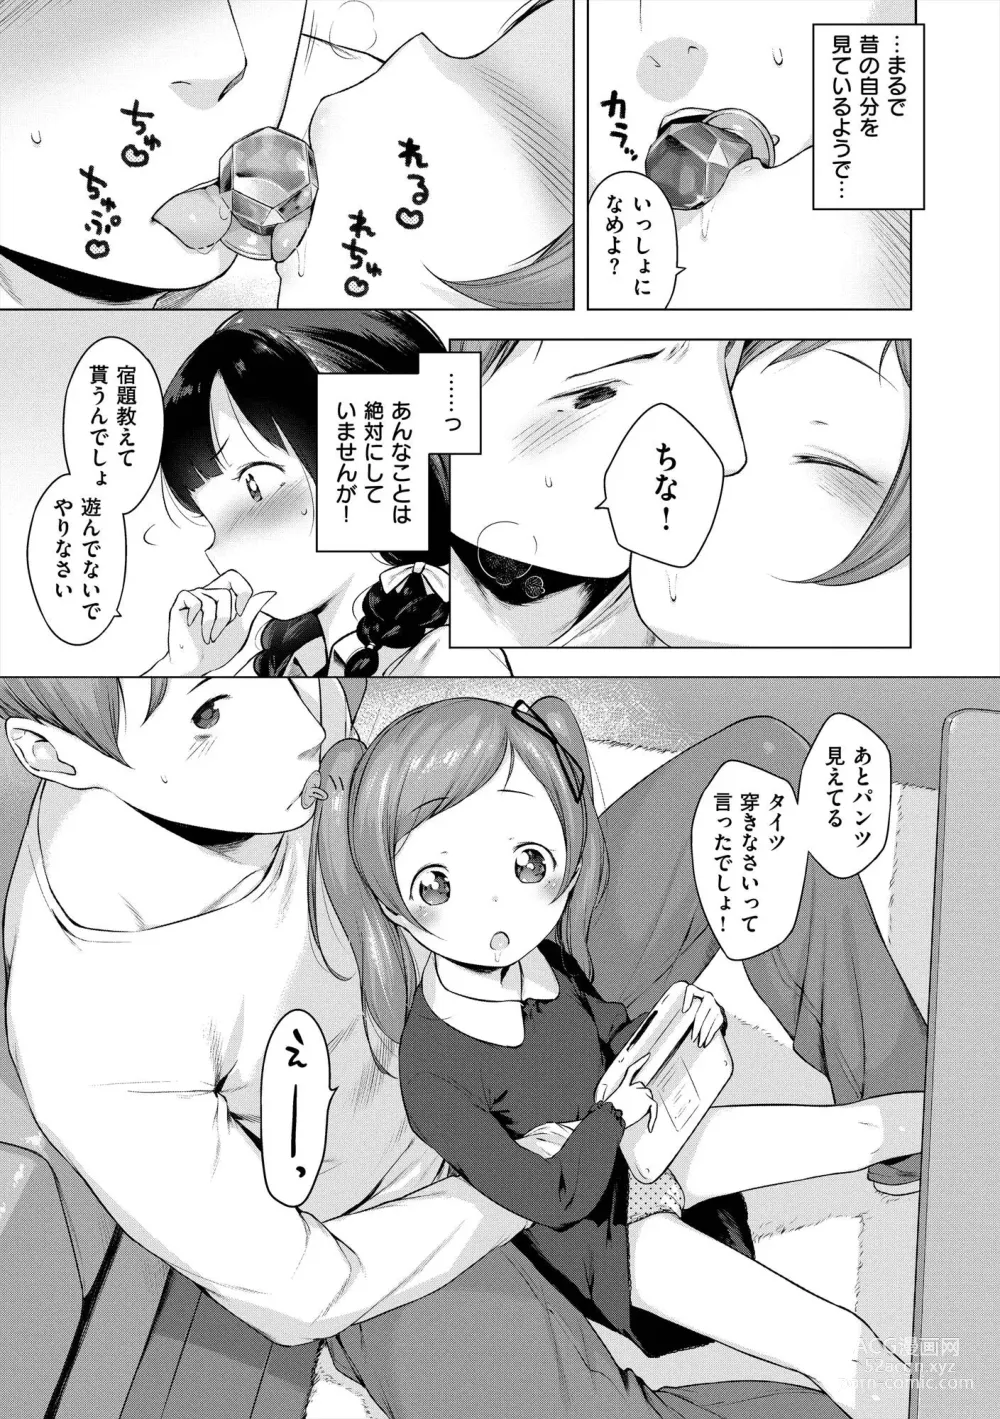 Page 25 of manga Onnanoko Party.